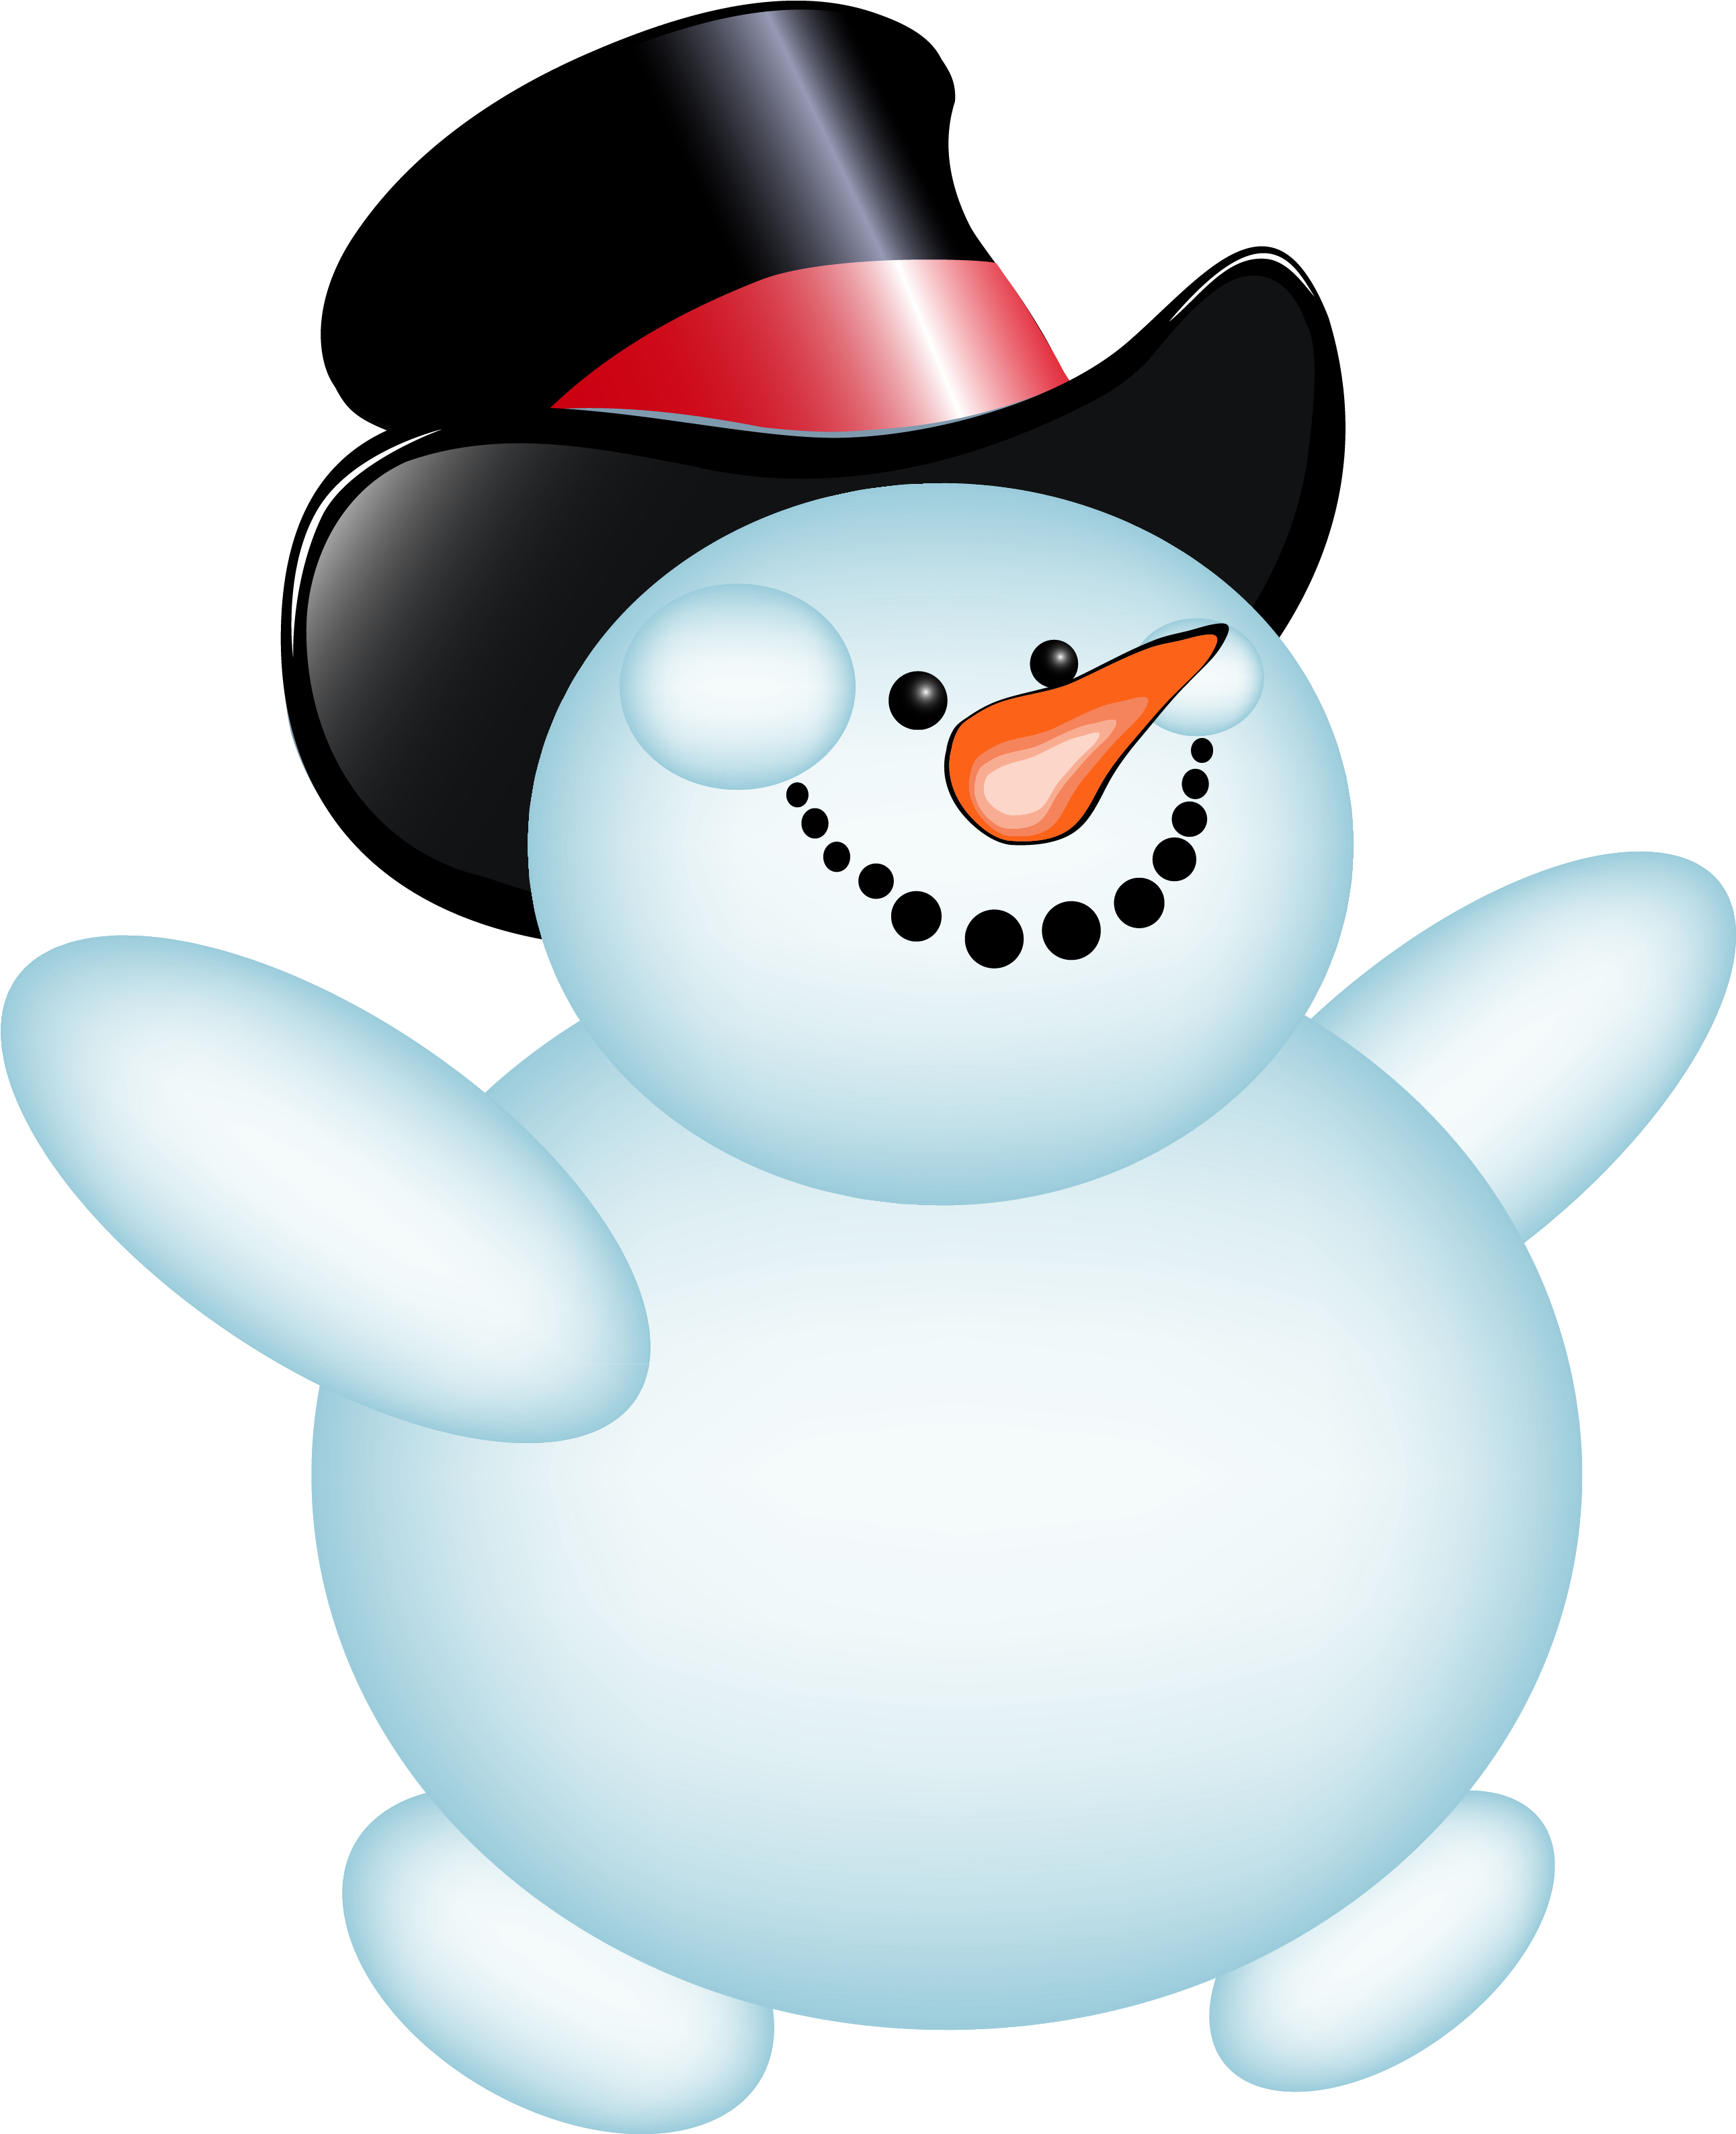 Snowman Clip art - snowman png download - 640*628 - Free Transparent ...